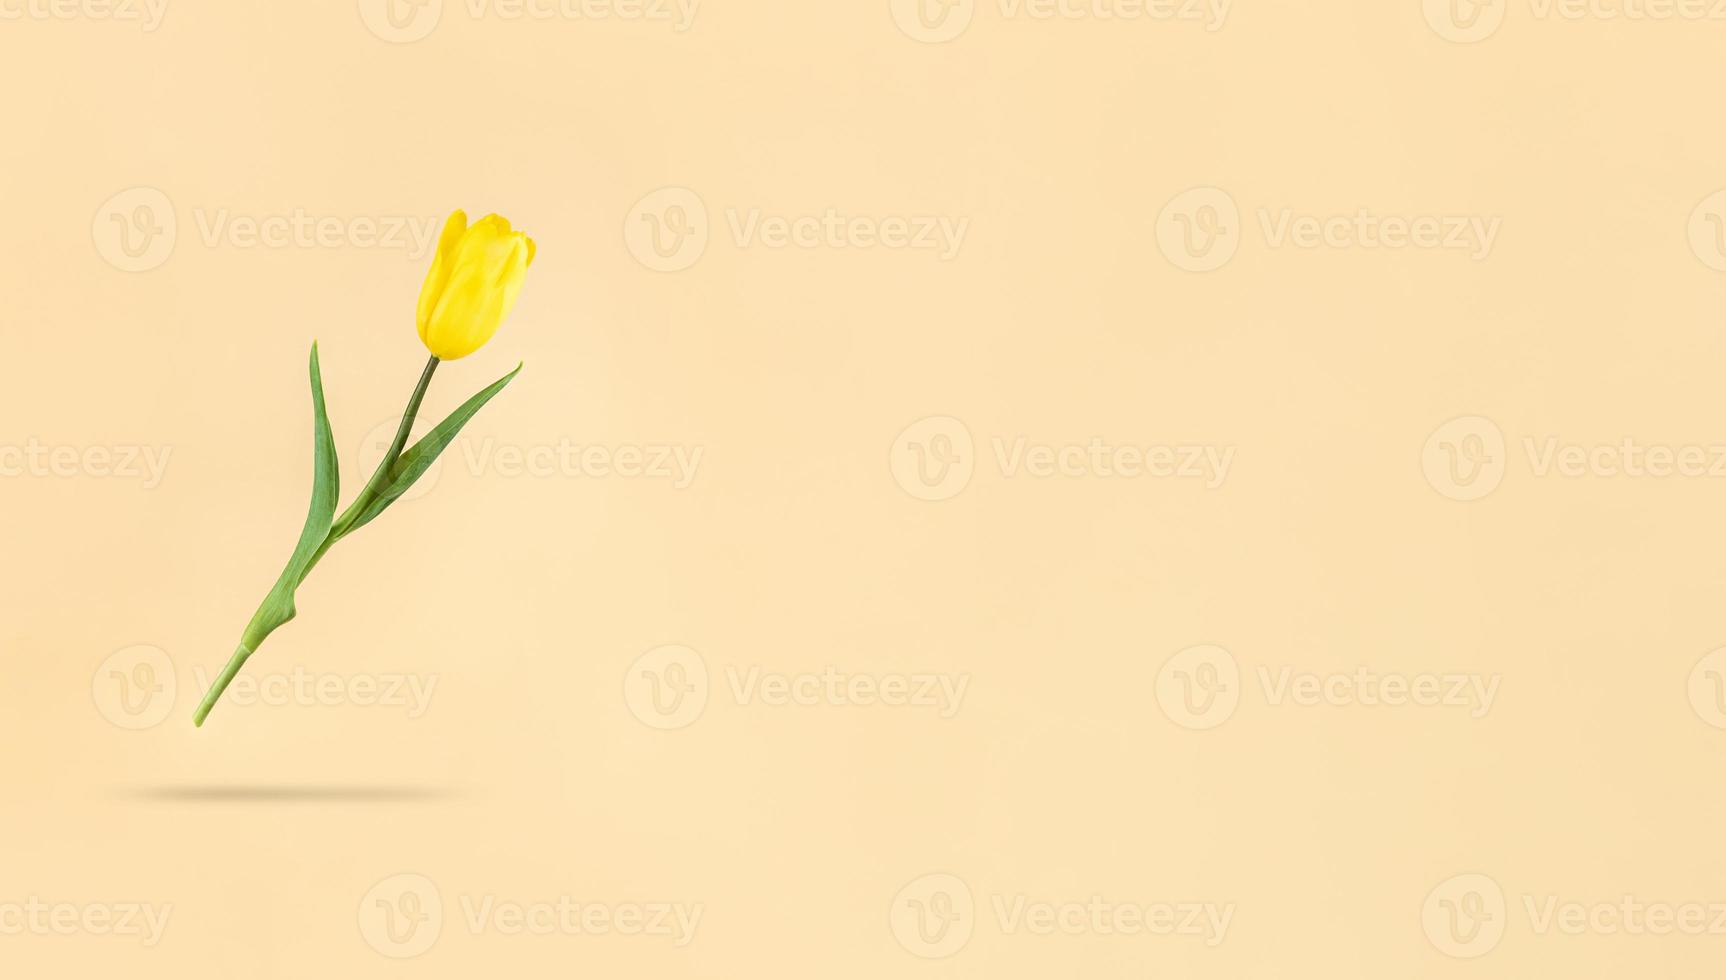 levitando tulipa amarela sobre fundo bege e sombra sob ela foto de estoque de feriado mimimalista com espaço de cópia